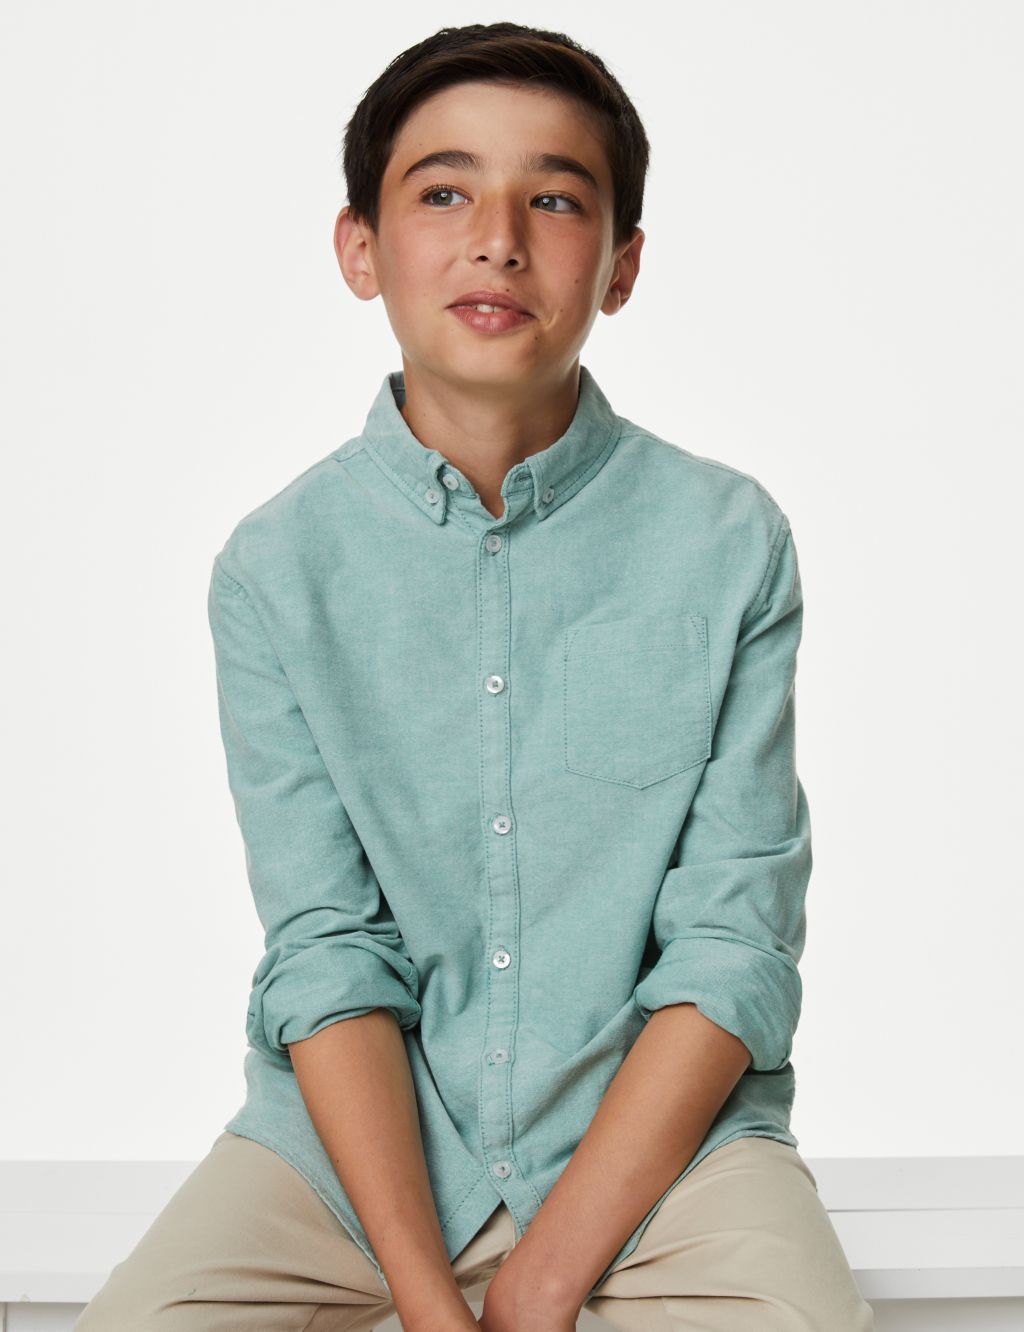 Shirt in Linen/Cotton, Mandarin Collar, Long Sleeves, for Boys - green,  Boys